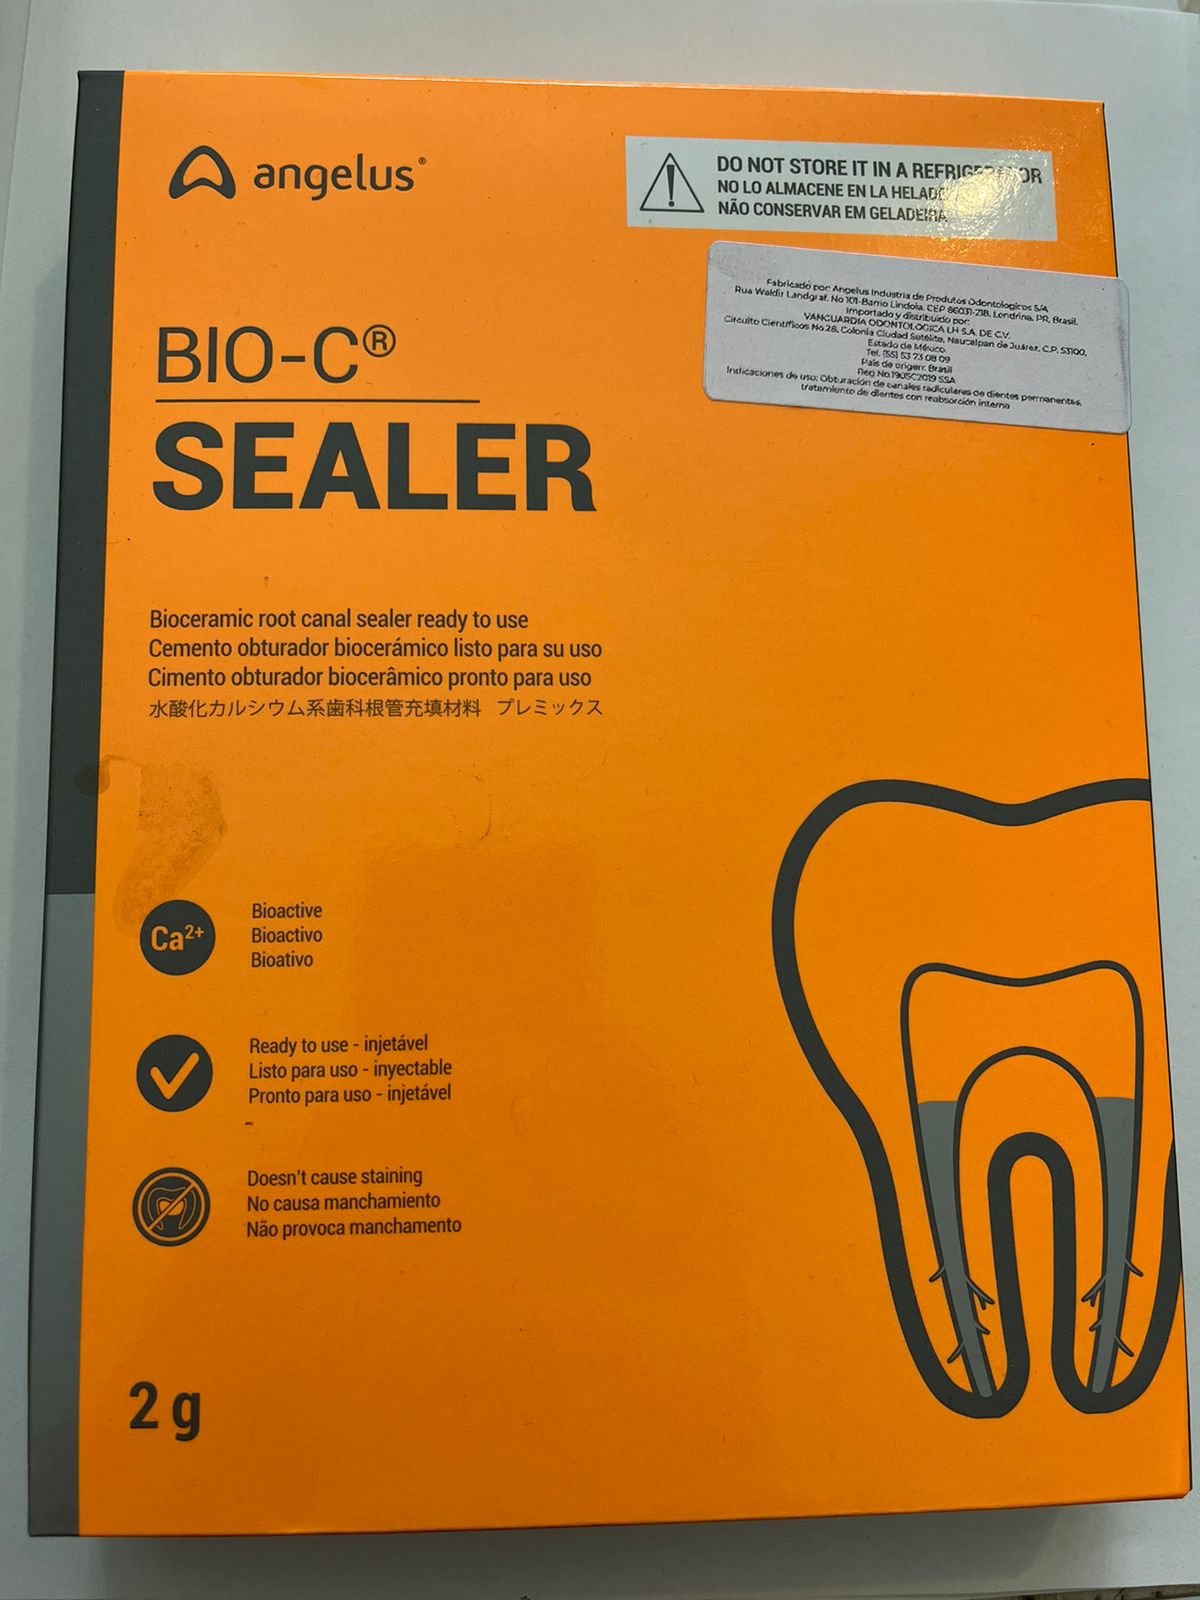 Bio-C Sealer Cemento obturador biocerámico bioactivo angelus 2g